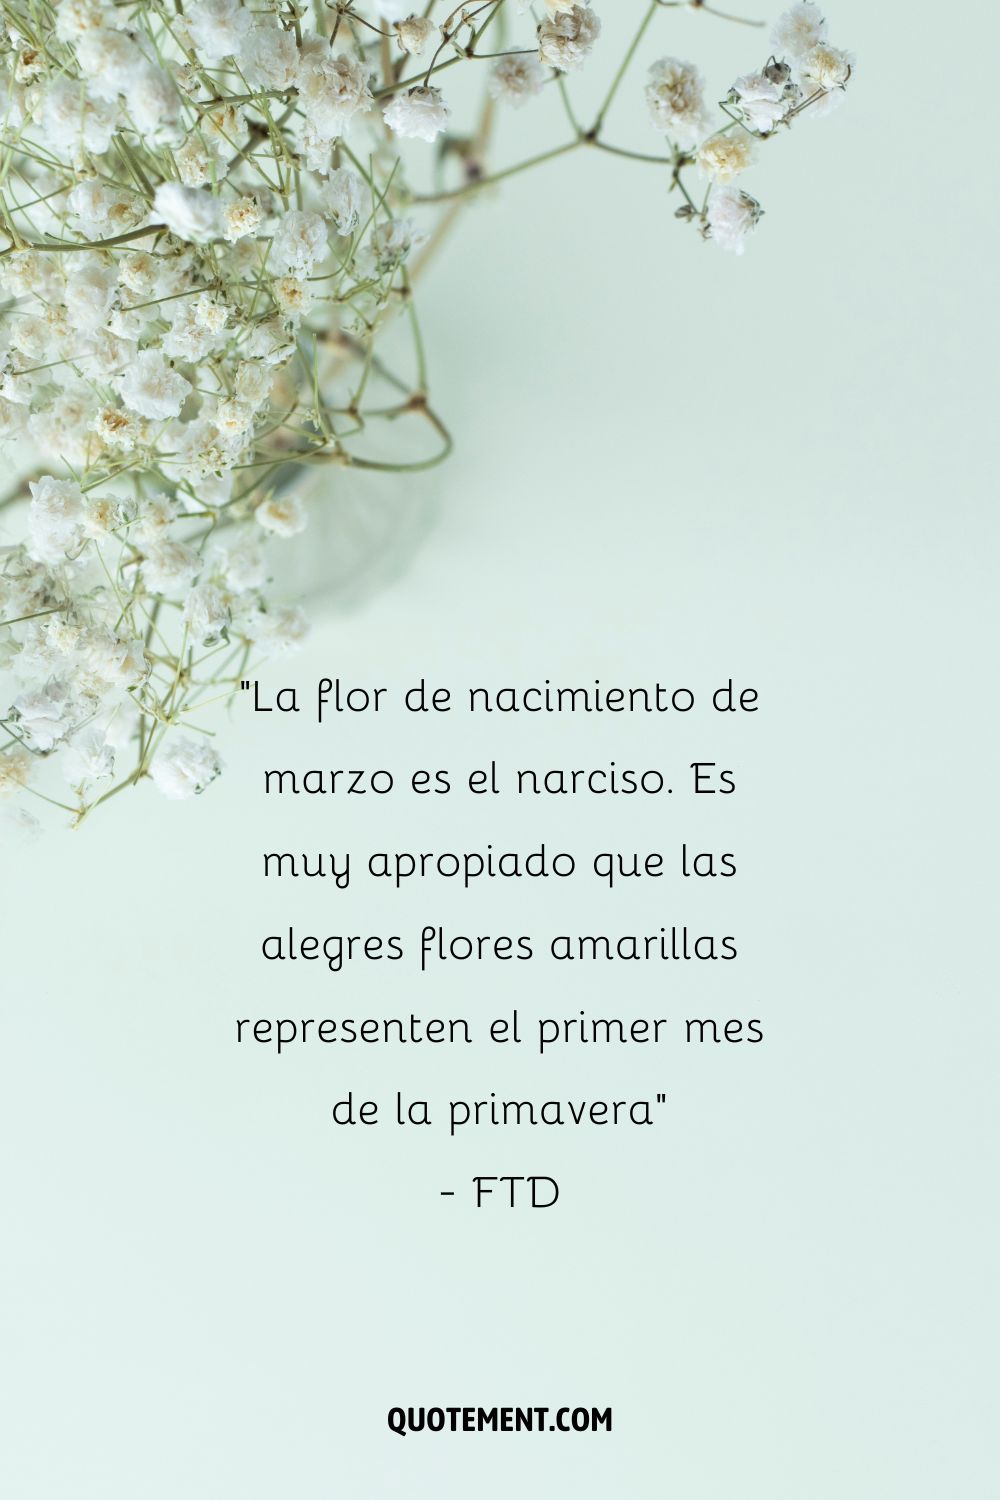 La flor de marzo es el narciso. Es muy apropiado que las alegres flores amarillas representen el primer mes de la primavera. - FTD